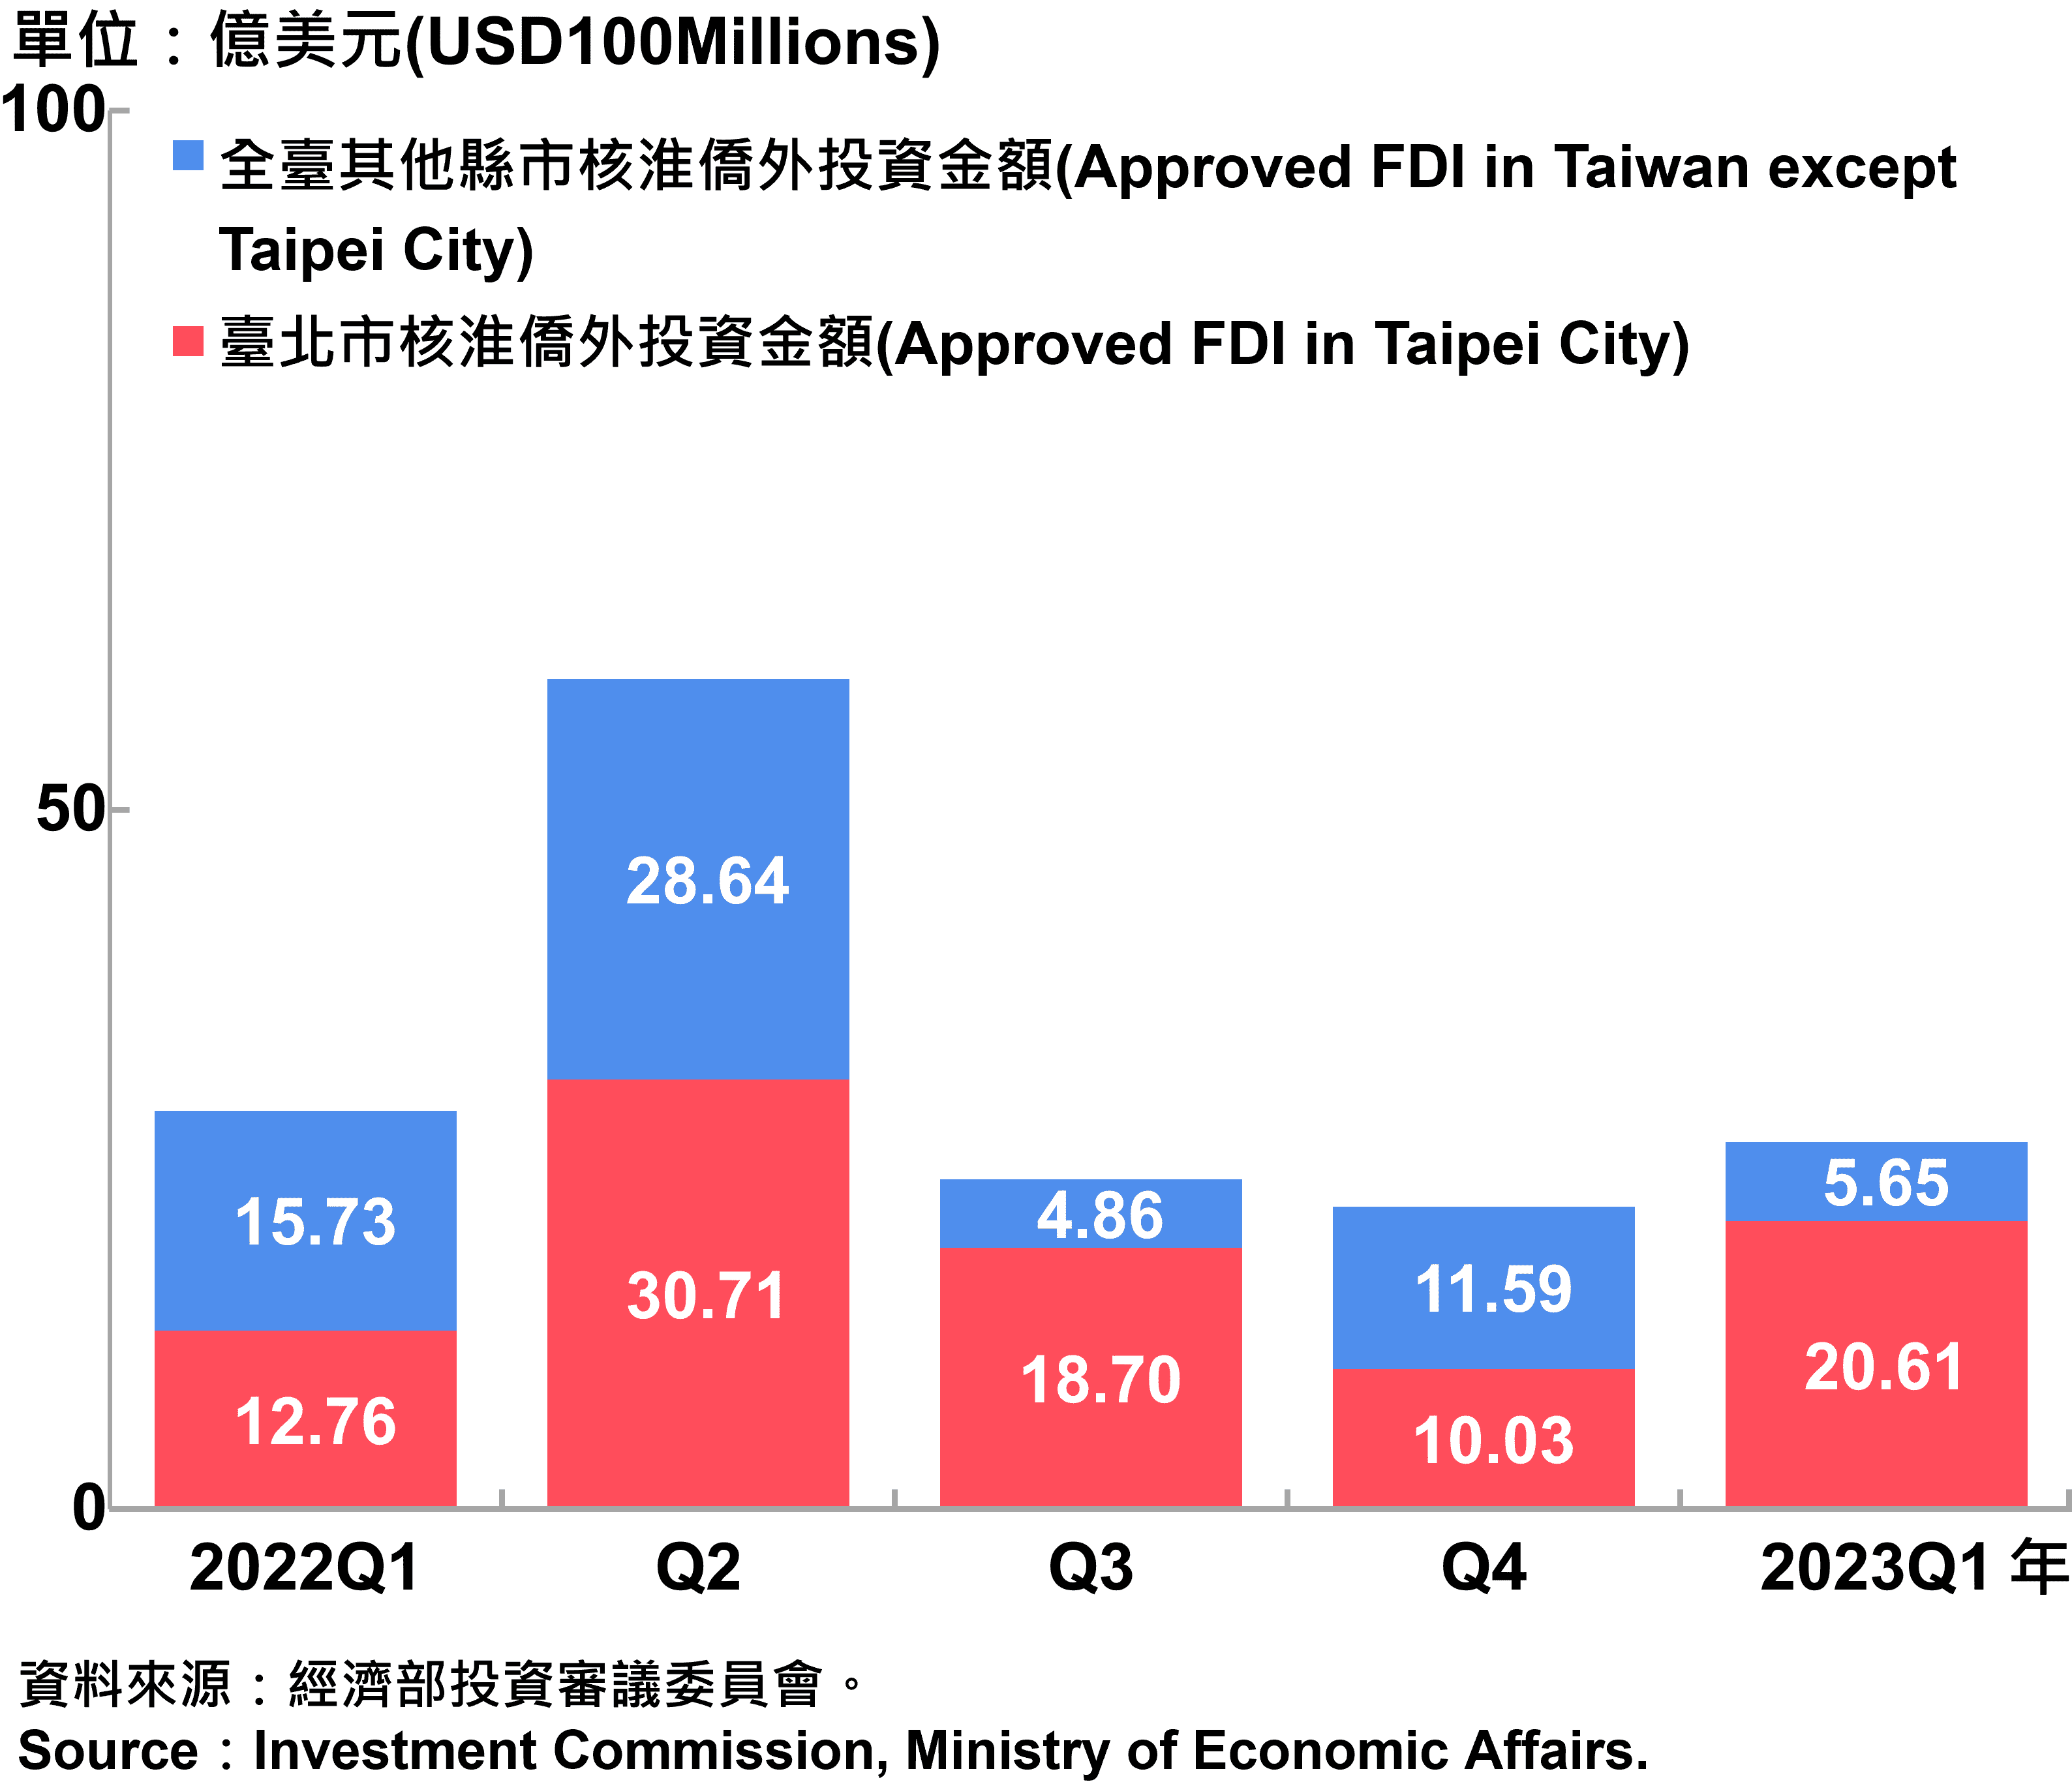 臺北市與全國僑外投資金額—2023Q1 Foreign Direct Investment（FDI）in Taipei City and Taiwan—2023Q1